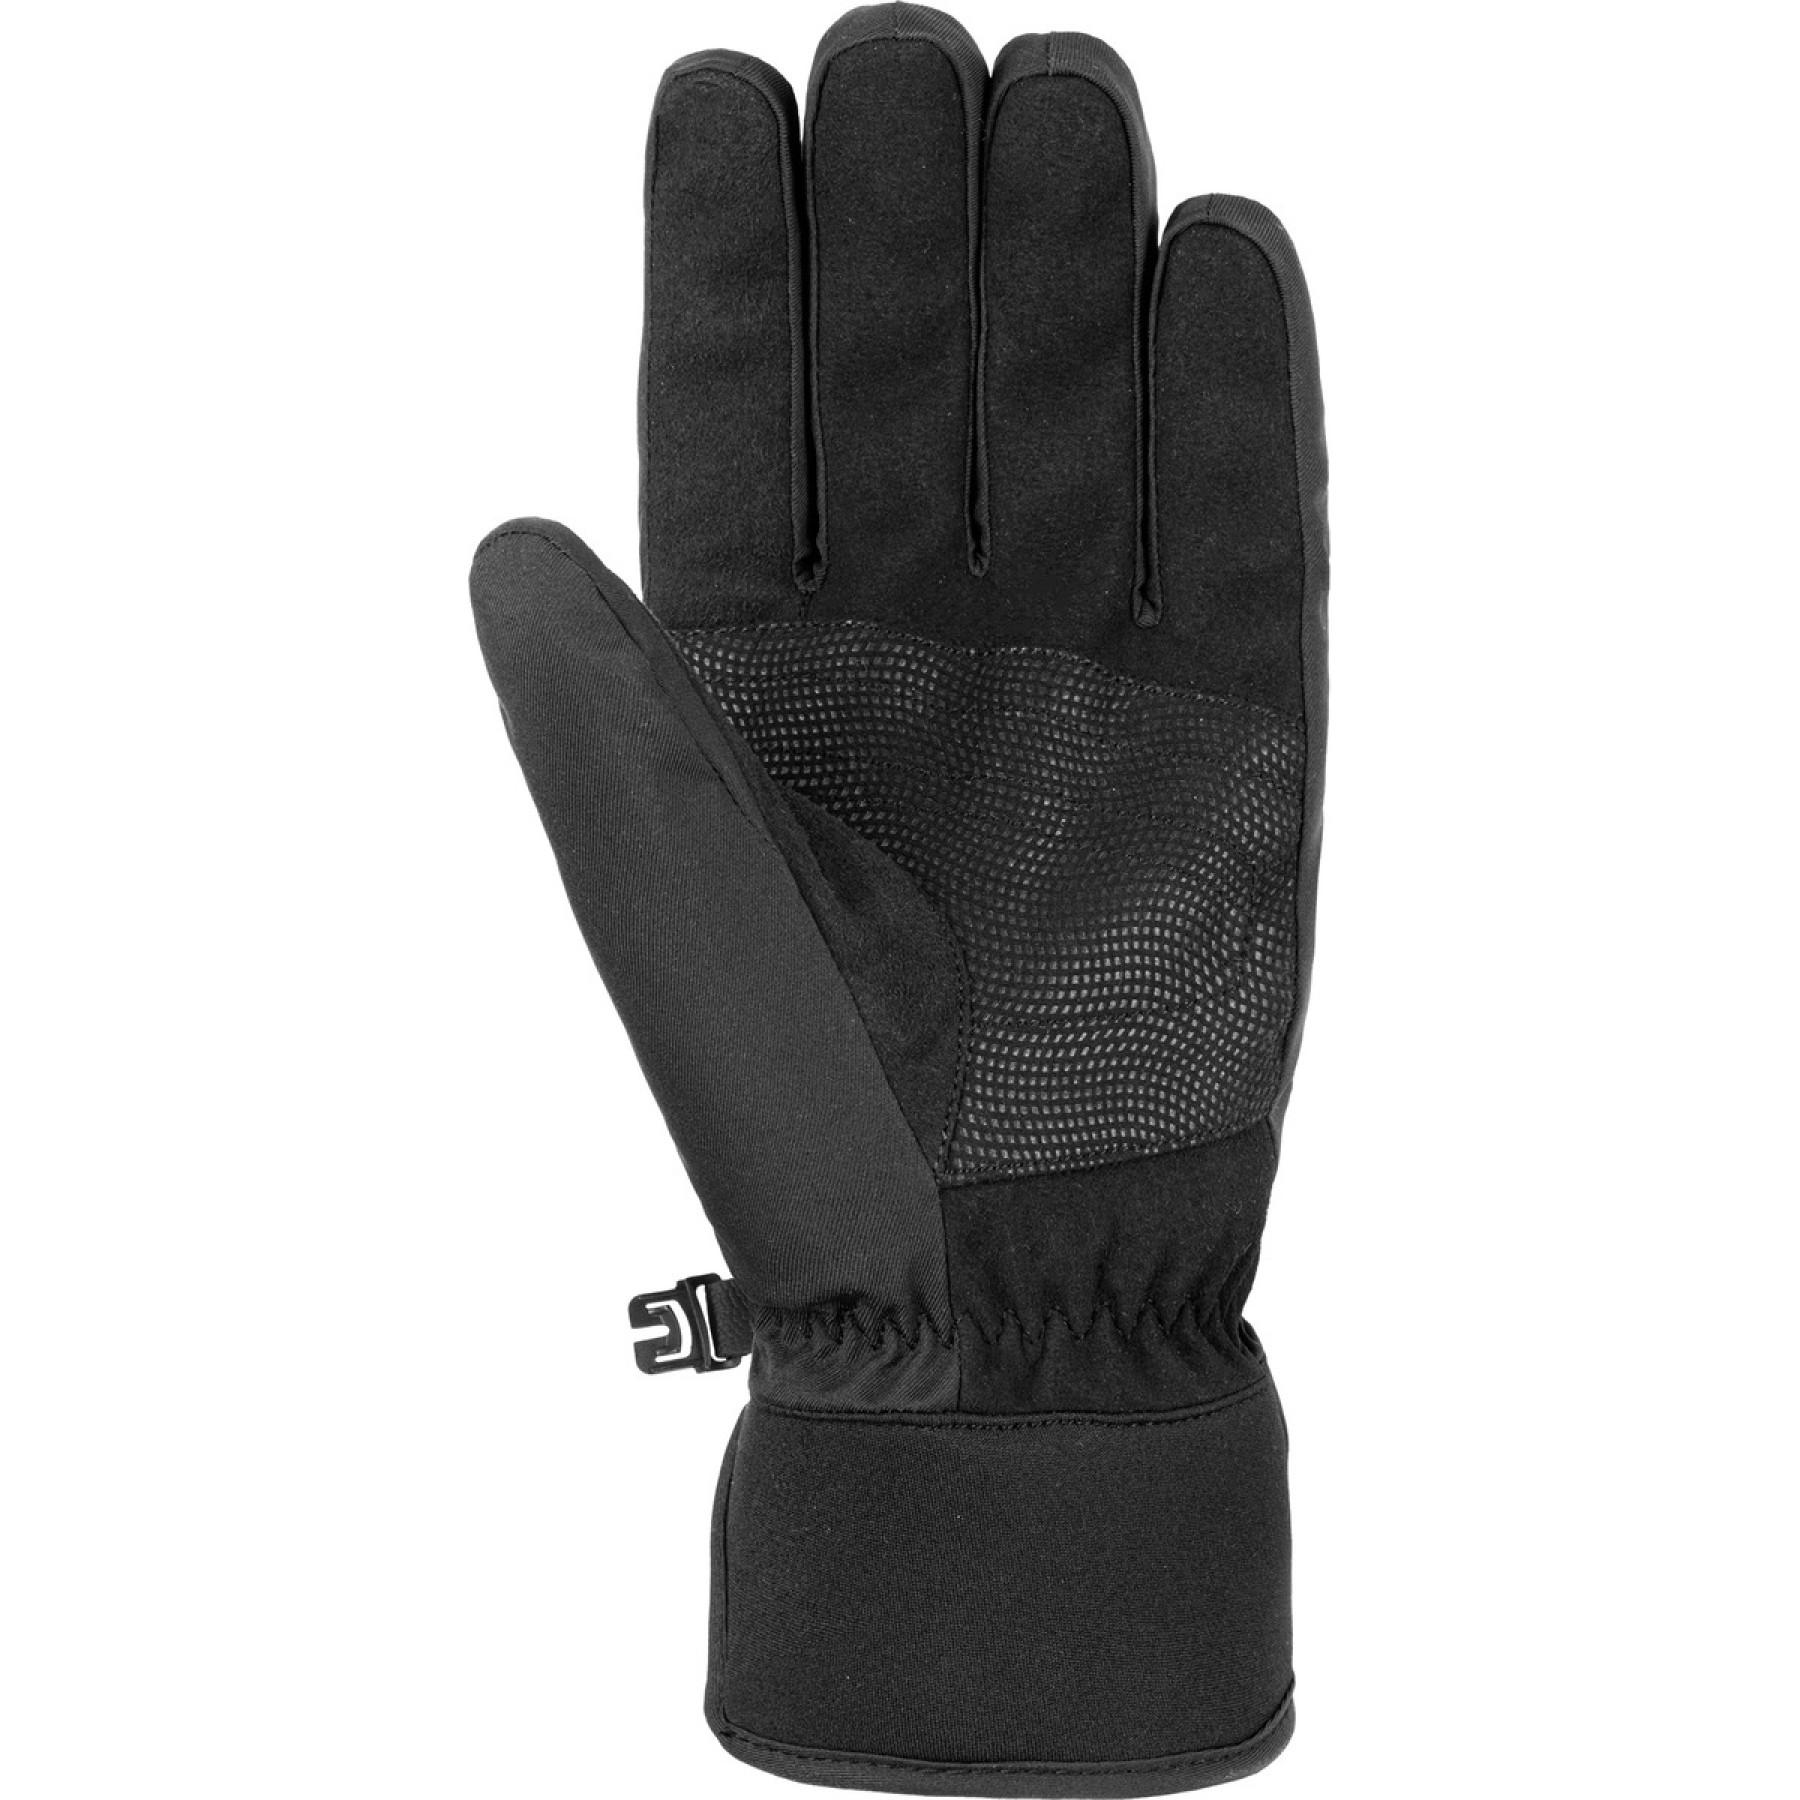 Gloves Reusch Laurel Touch-tec